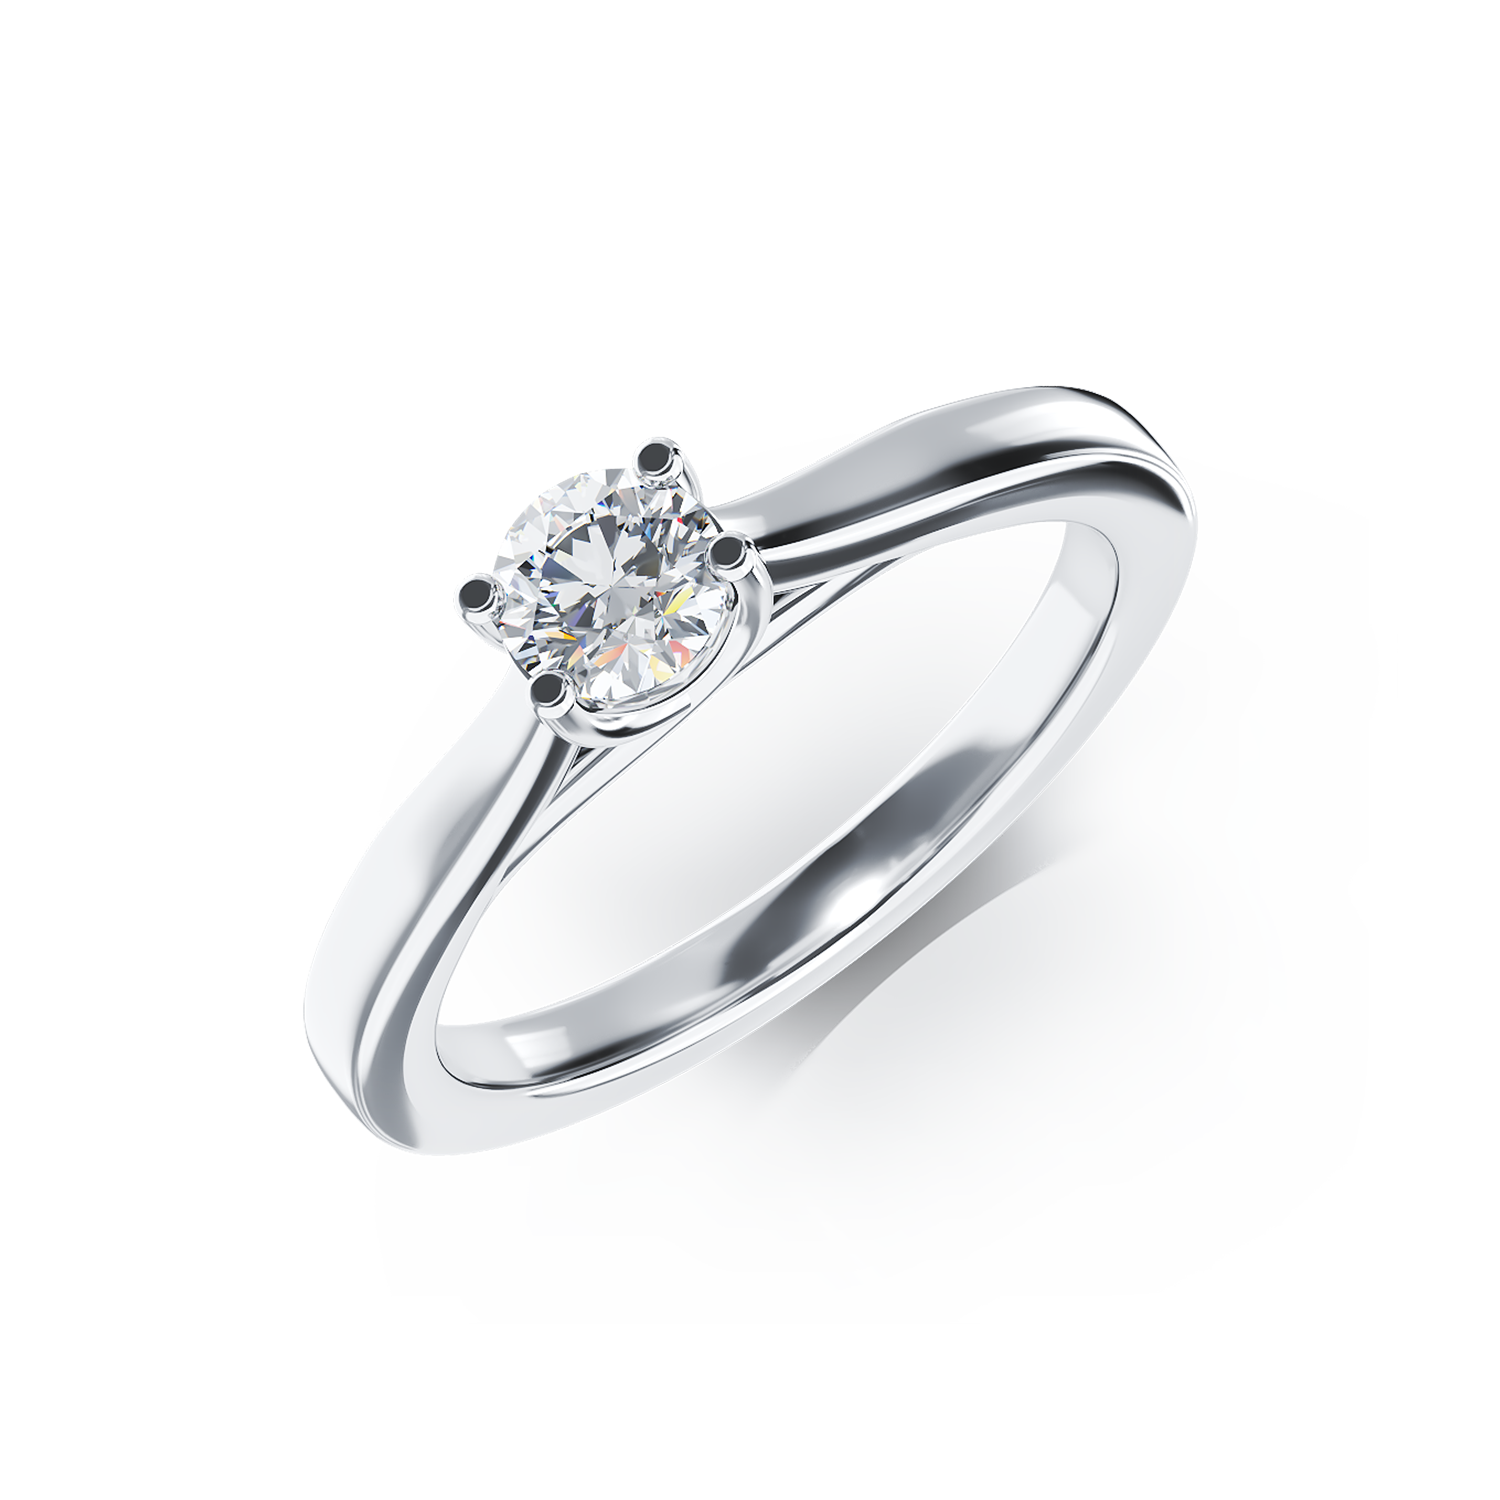 Eljegyzési gyűrű 18K-os fehér aranyból 0,16ct gyémánttal. Gramm: 3,2